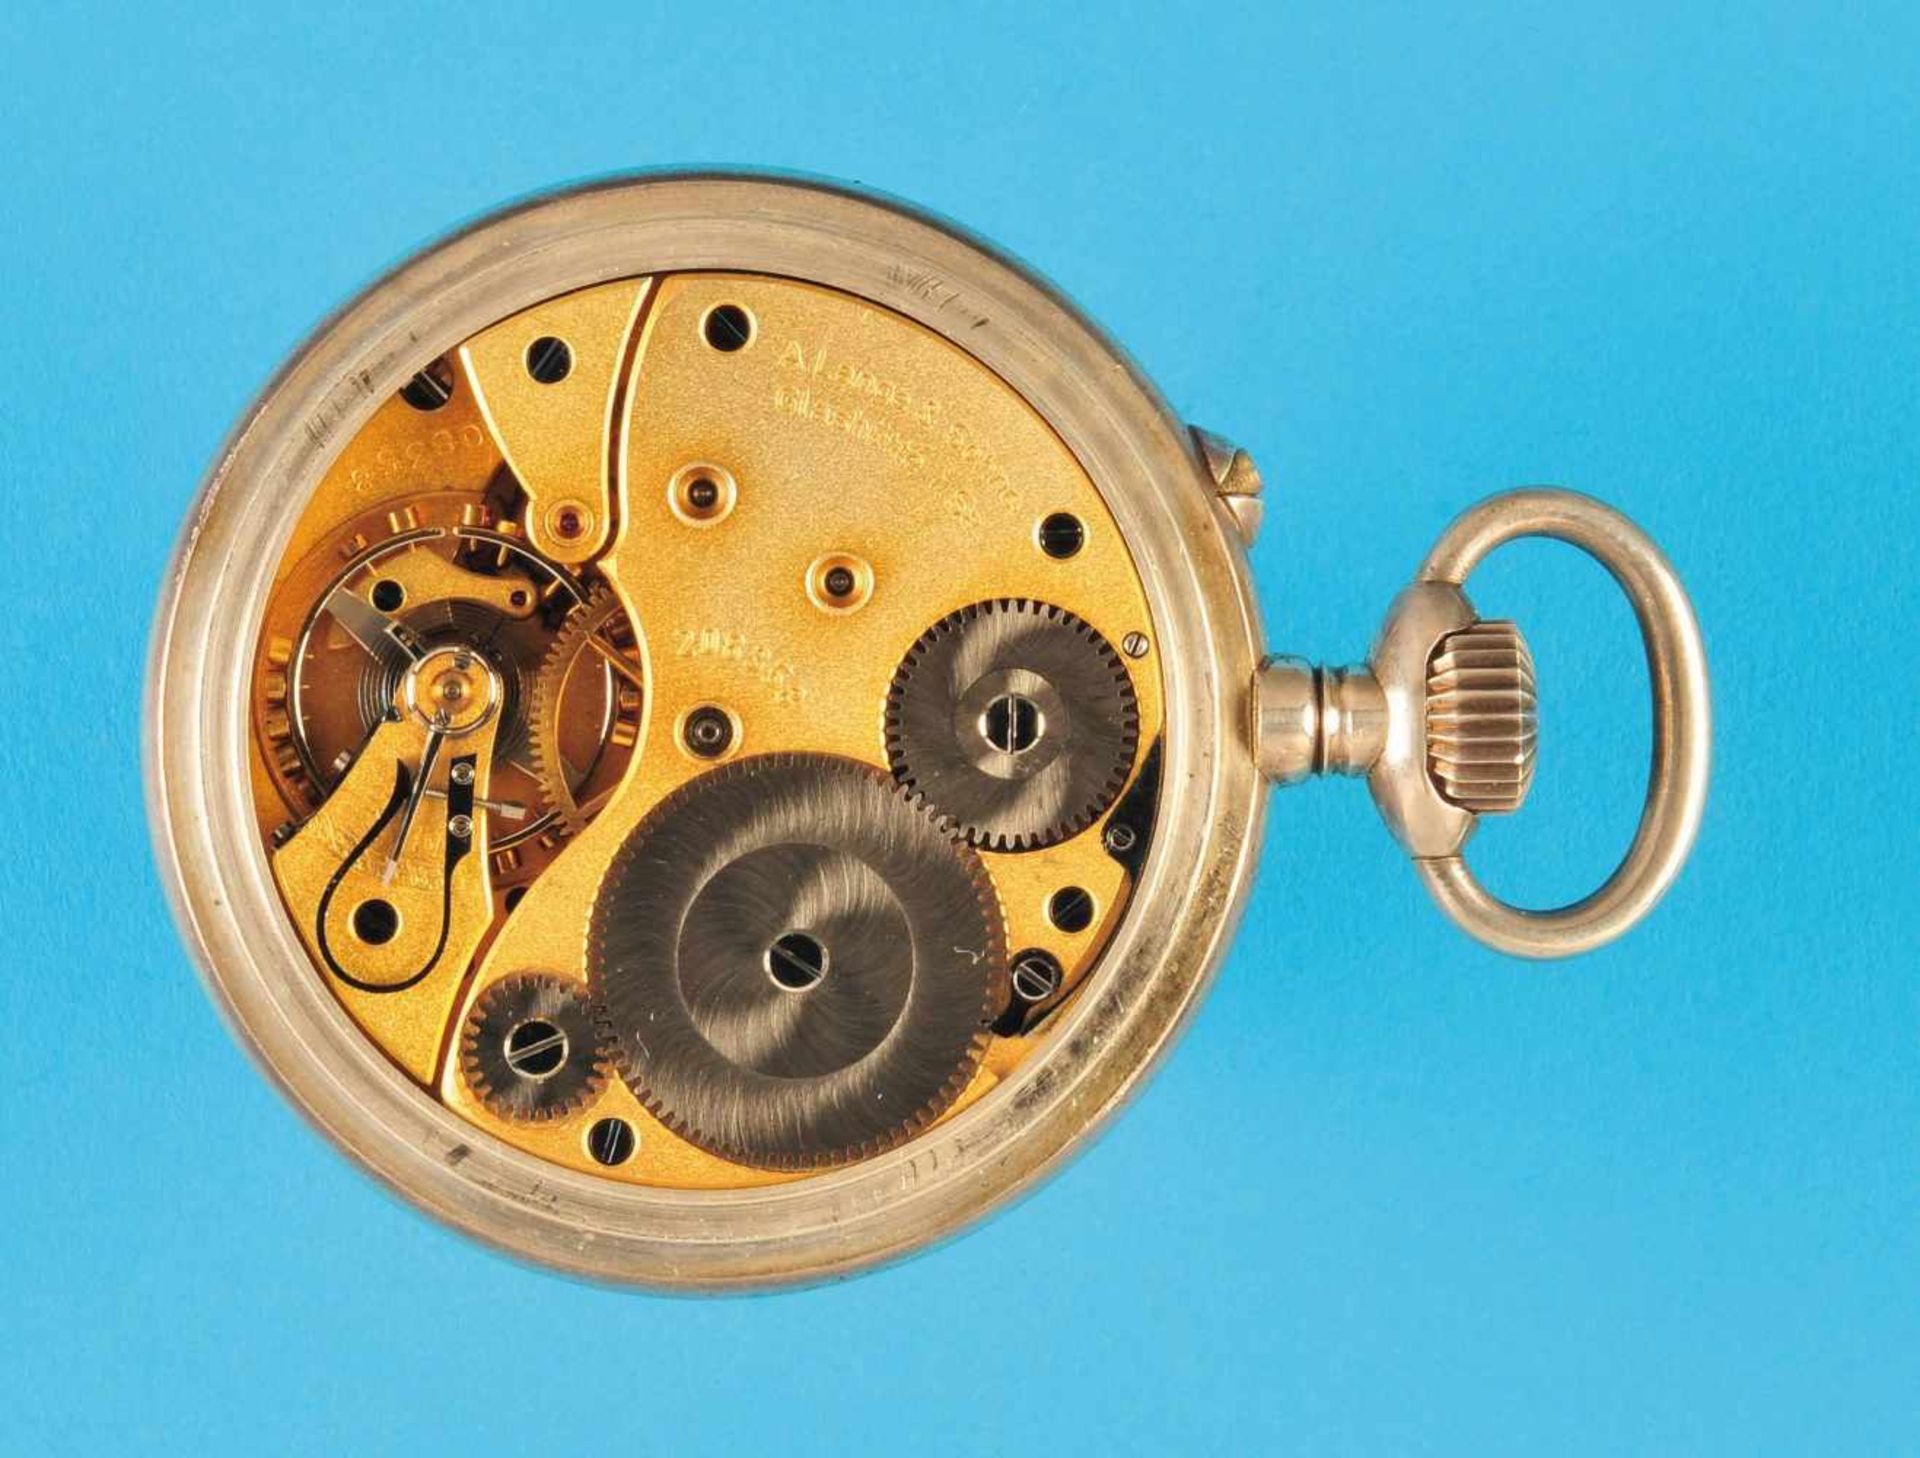 Silver observation pocket watch, GUB Glashütter UhrenbetriebeSilberne Beobachtungs-Taschenuhr mir